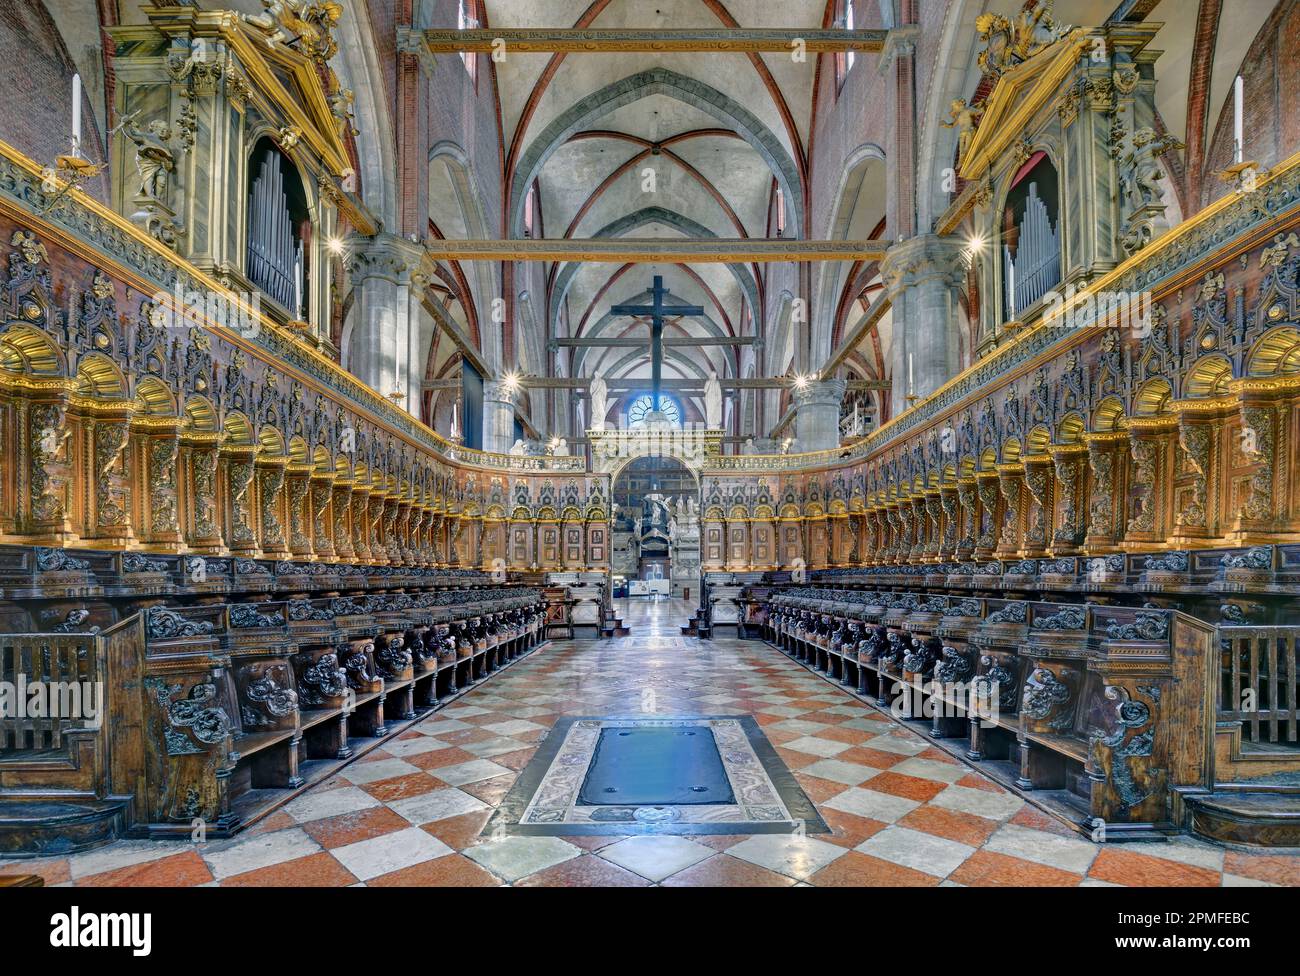 L'Italie, la Vénétie, Venise, classée au patrimoine mondial de l'UNESCO, la basilique Santa Maria Gloriosa Dei Frari, le choeur et ses étals Banque D'Images